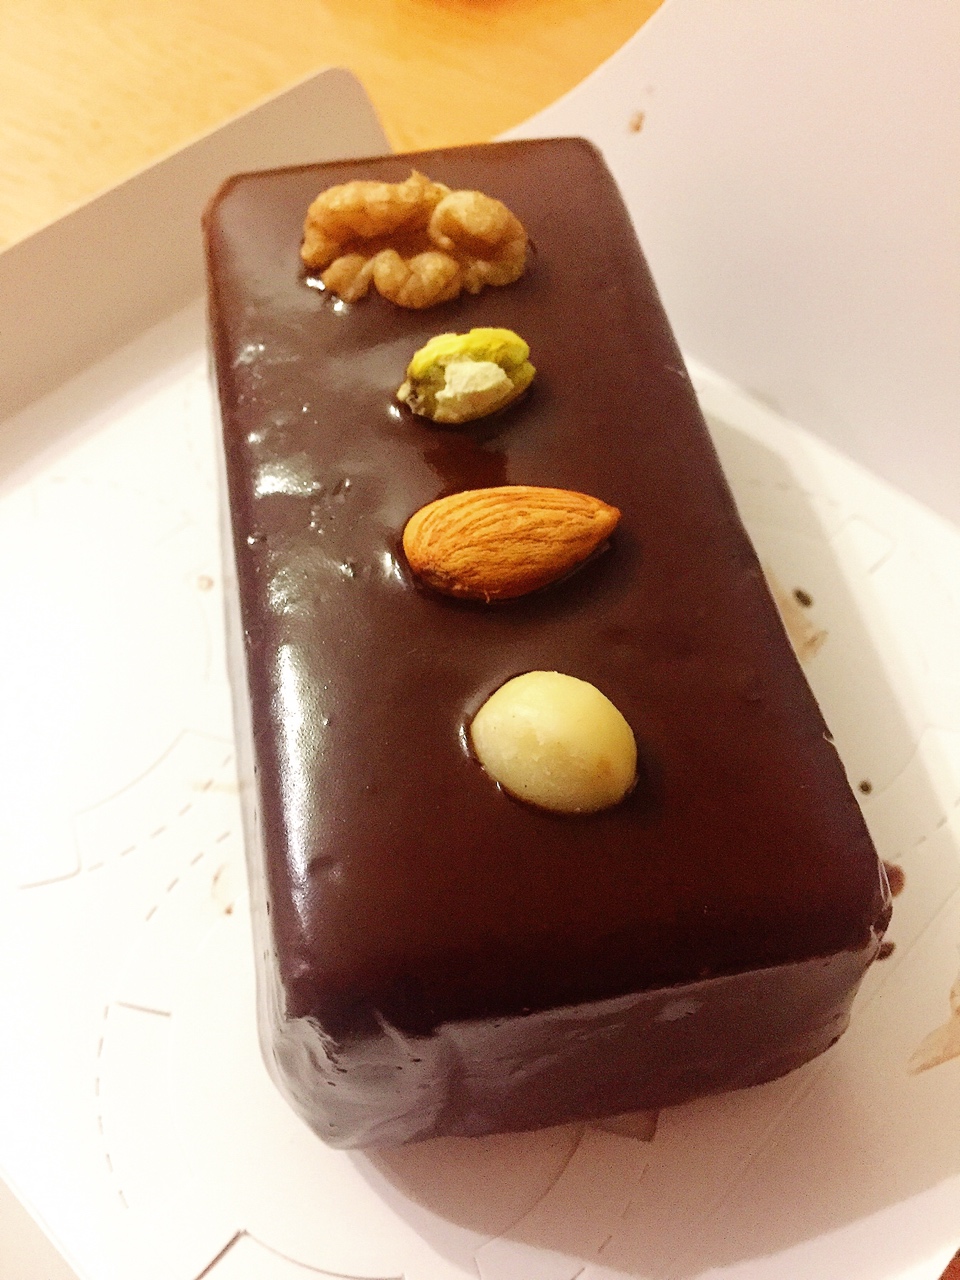 榛子巧克力蛋糕